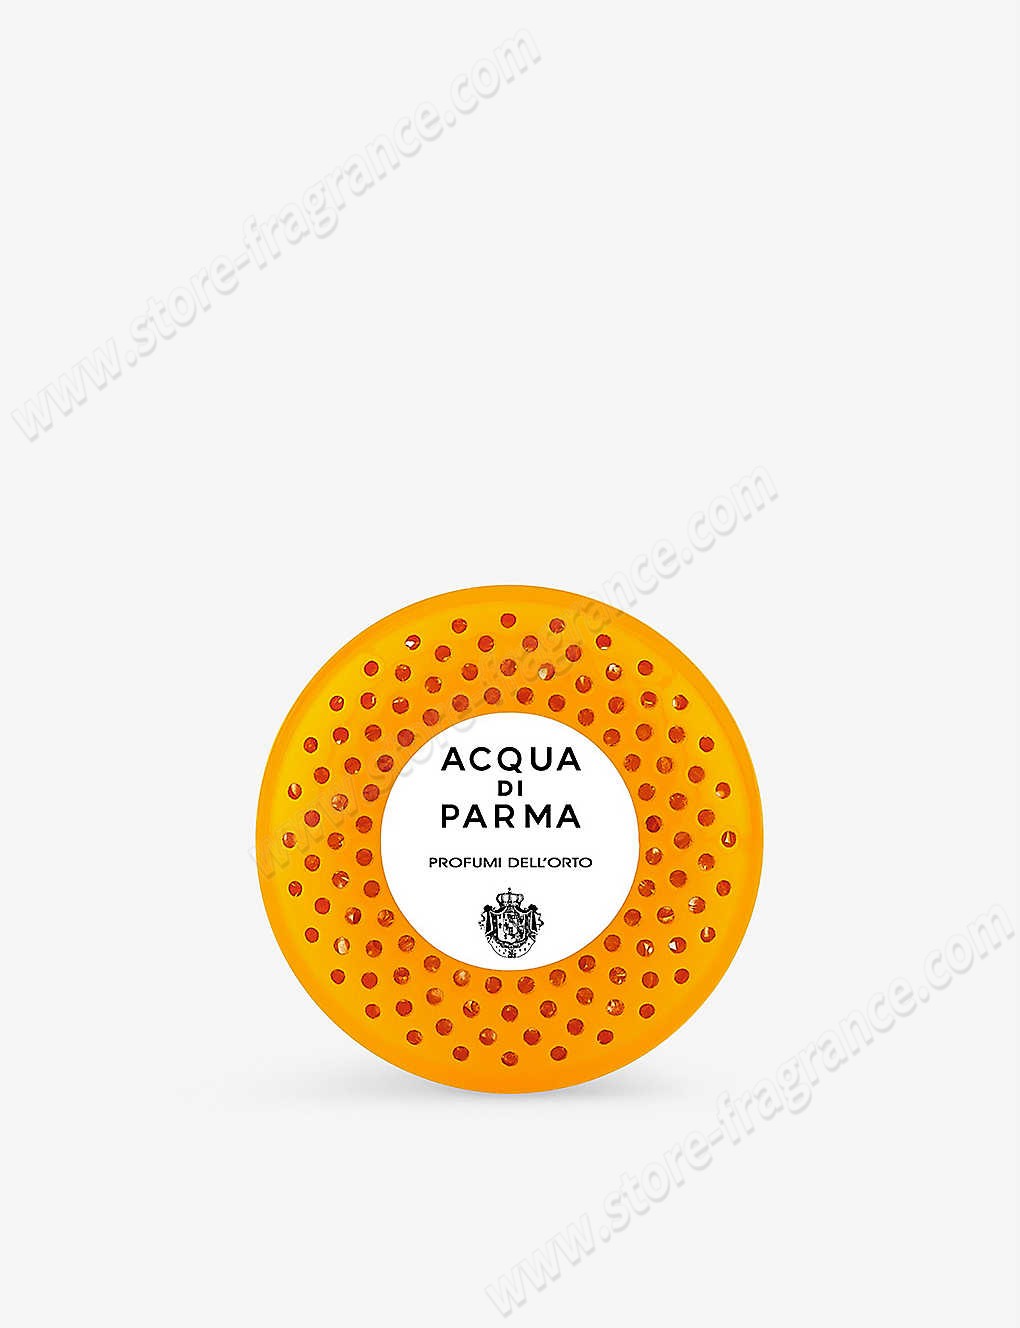 ACQUA DI PARMA/Profumi Dell’Orto car diffuser fragrance refill 19g ✿ Discount Store - -0